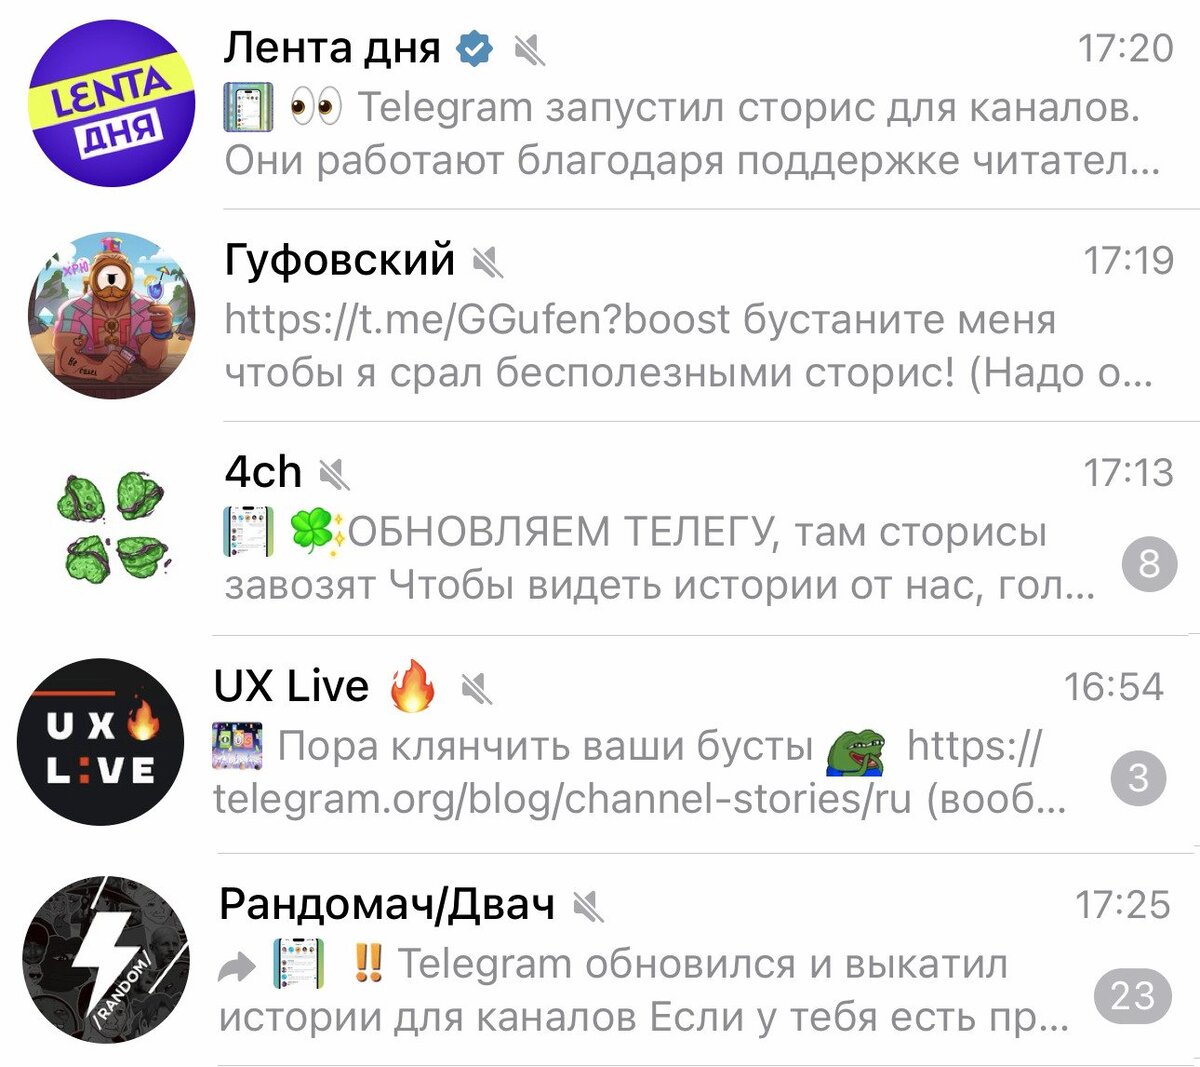 Как обновить телеграмм на телефоне андроид бесплатно на русском языке без регистрации и бесплатно фото 96